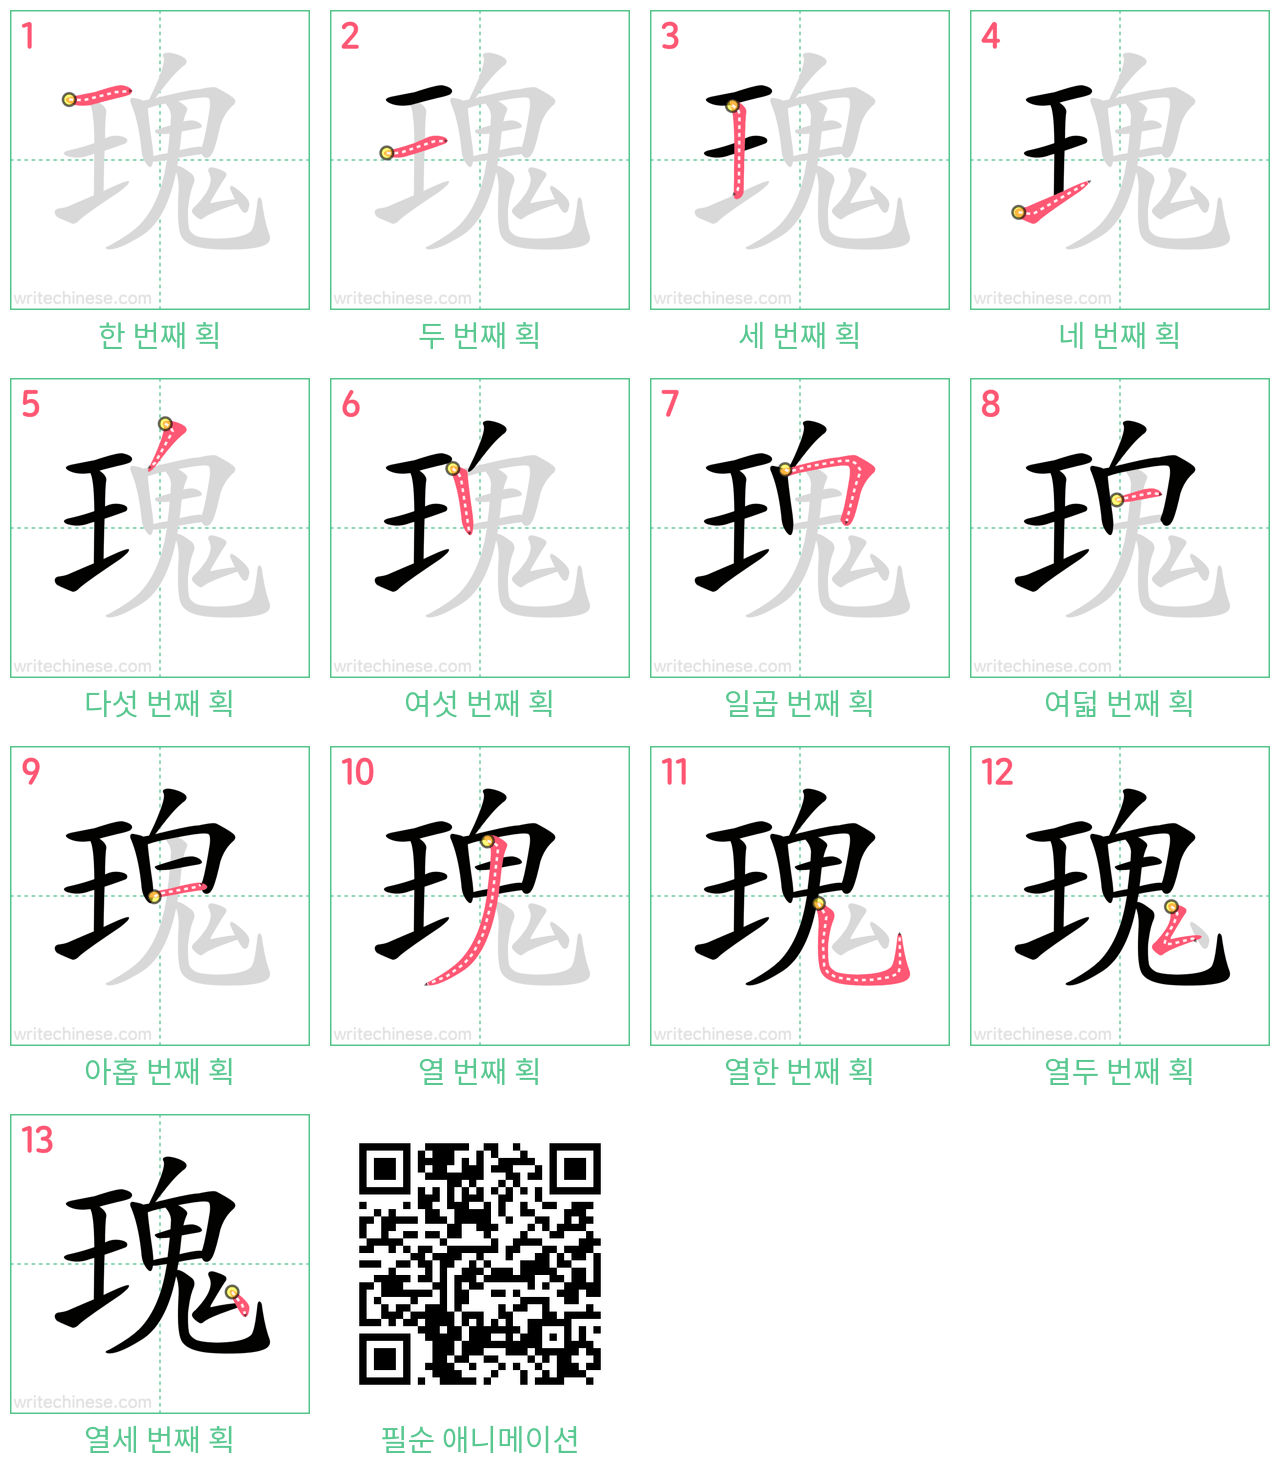 瑰 step-by-step stroke order diagrams